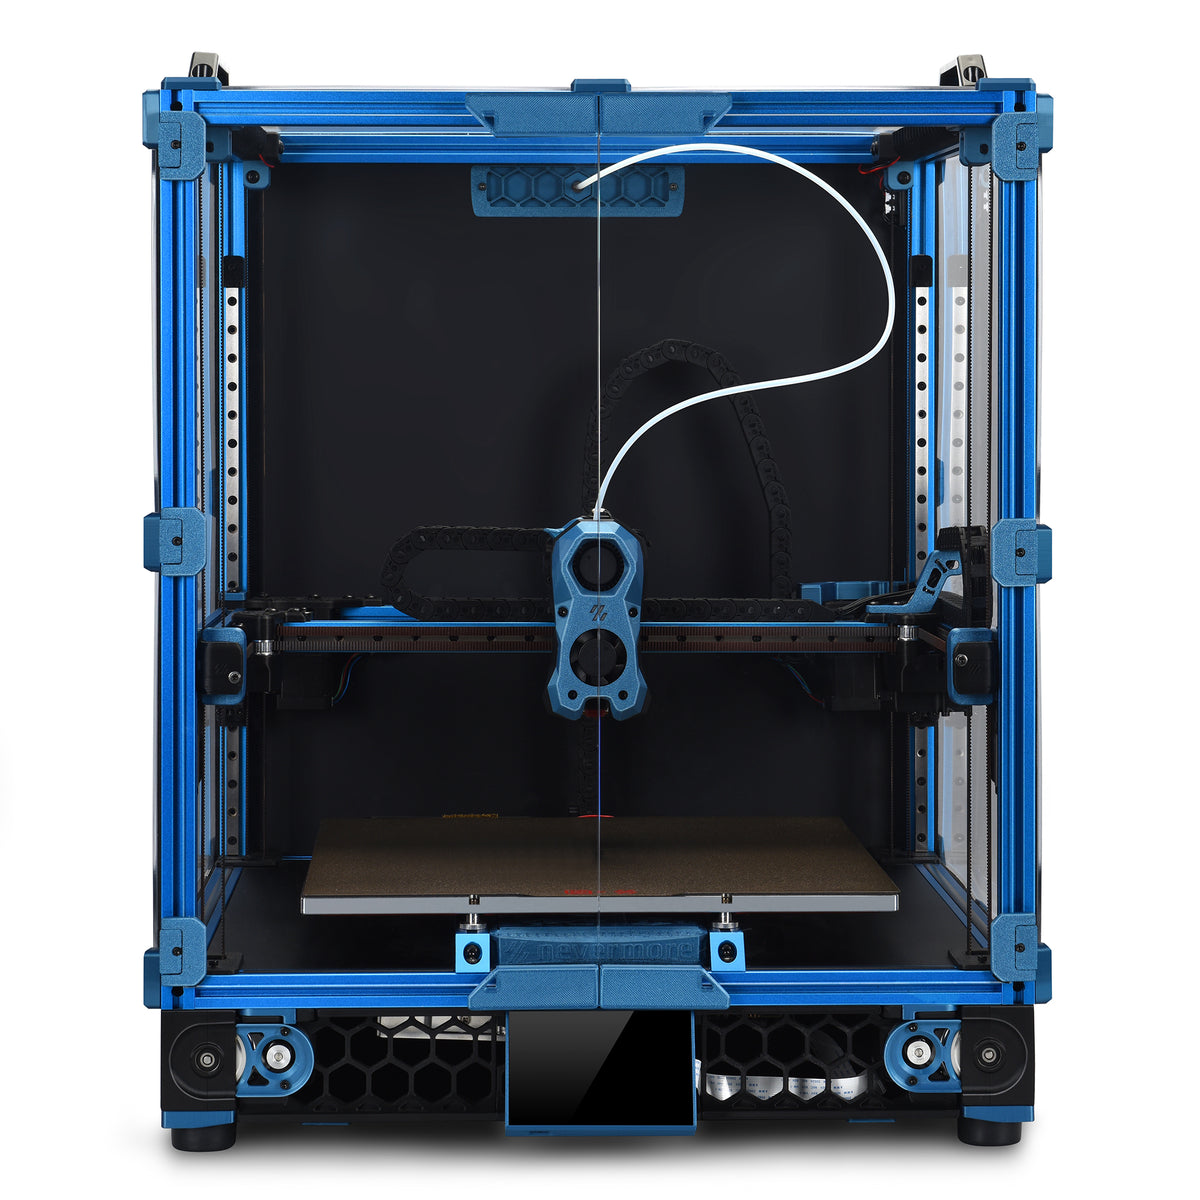 EDEN VORON MK2.4 EDITION — Eden 3D Printer